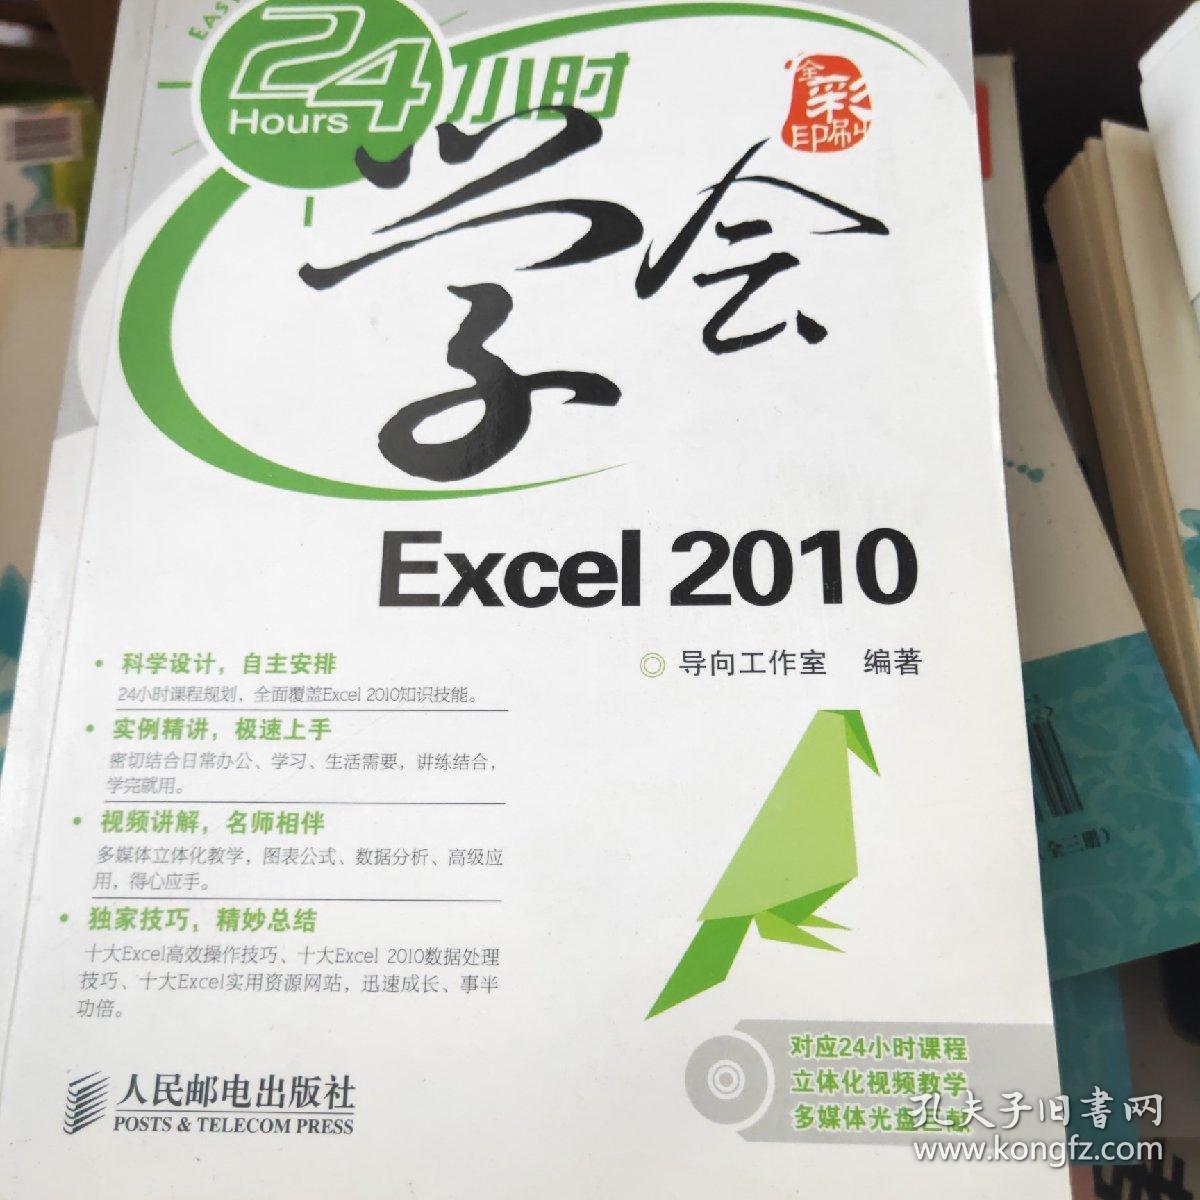 24小时学会Excel 2010(无盘)